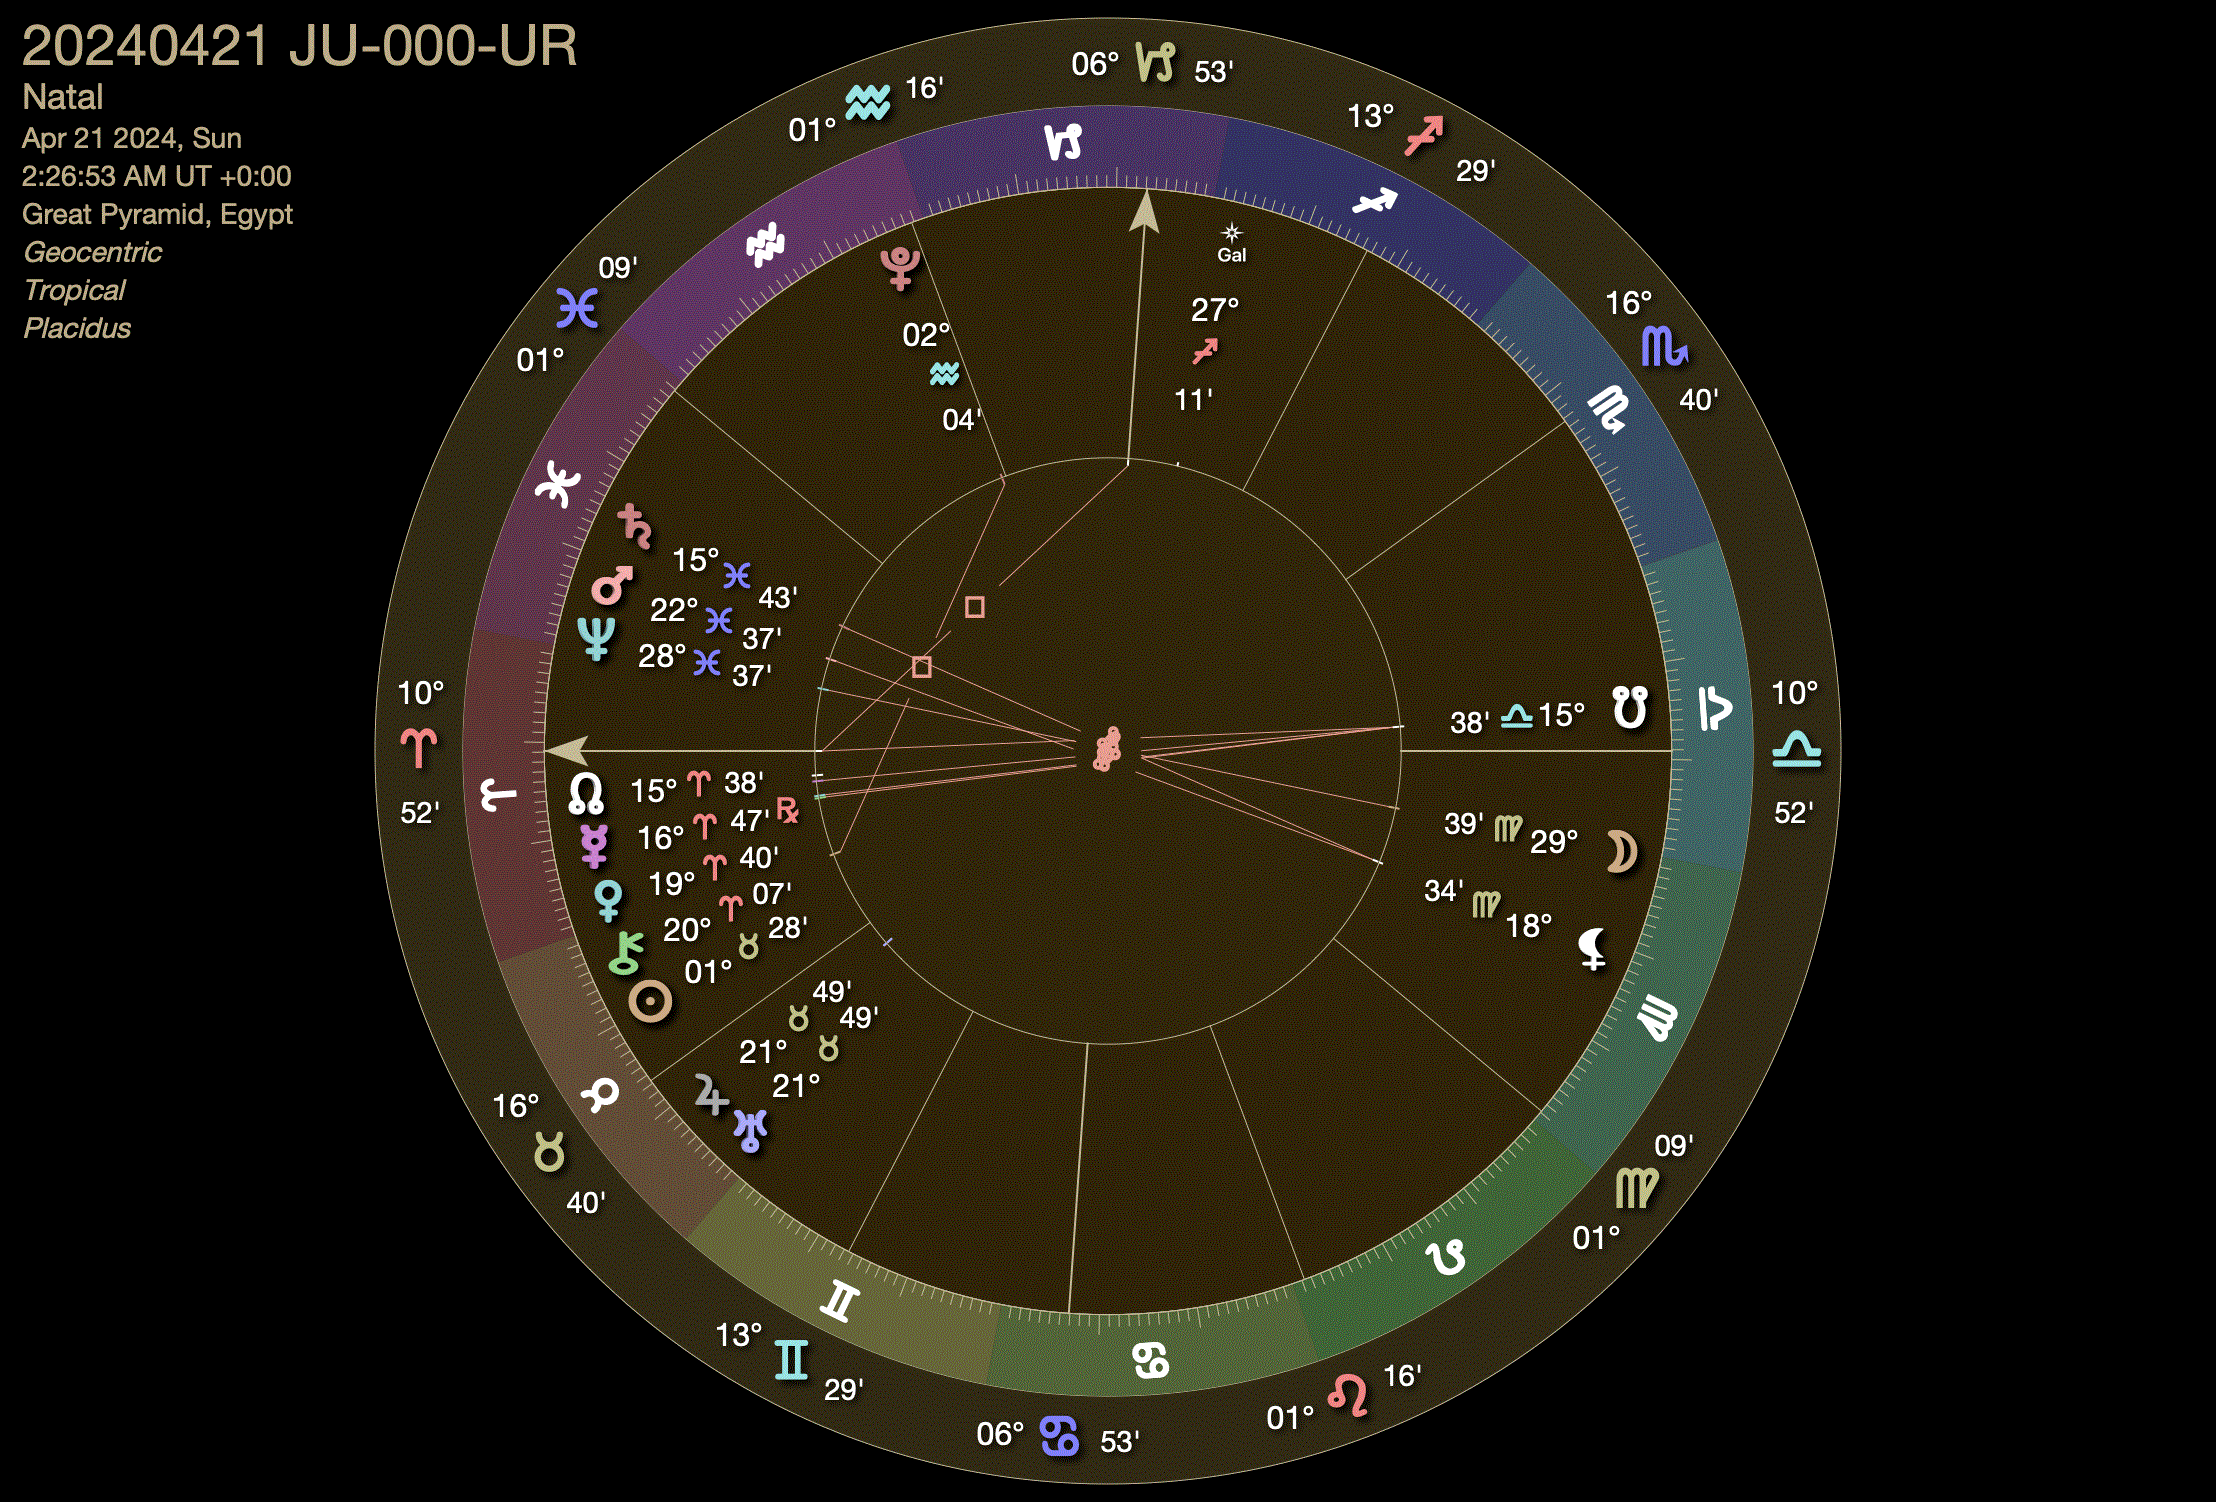 April 21, 2024 Jupiter-Uranus Conjunction